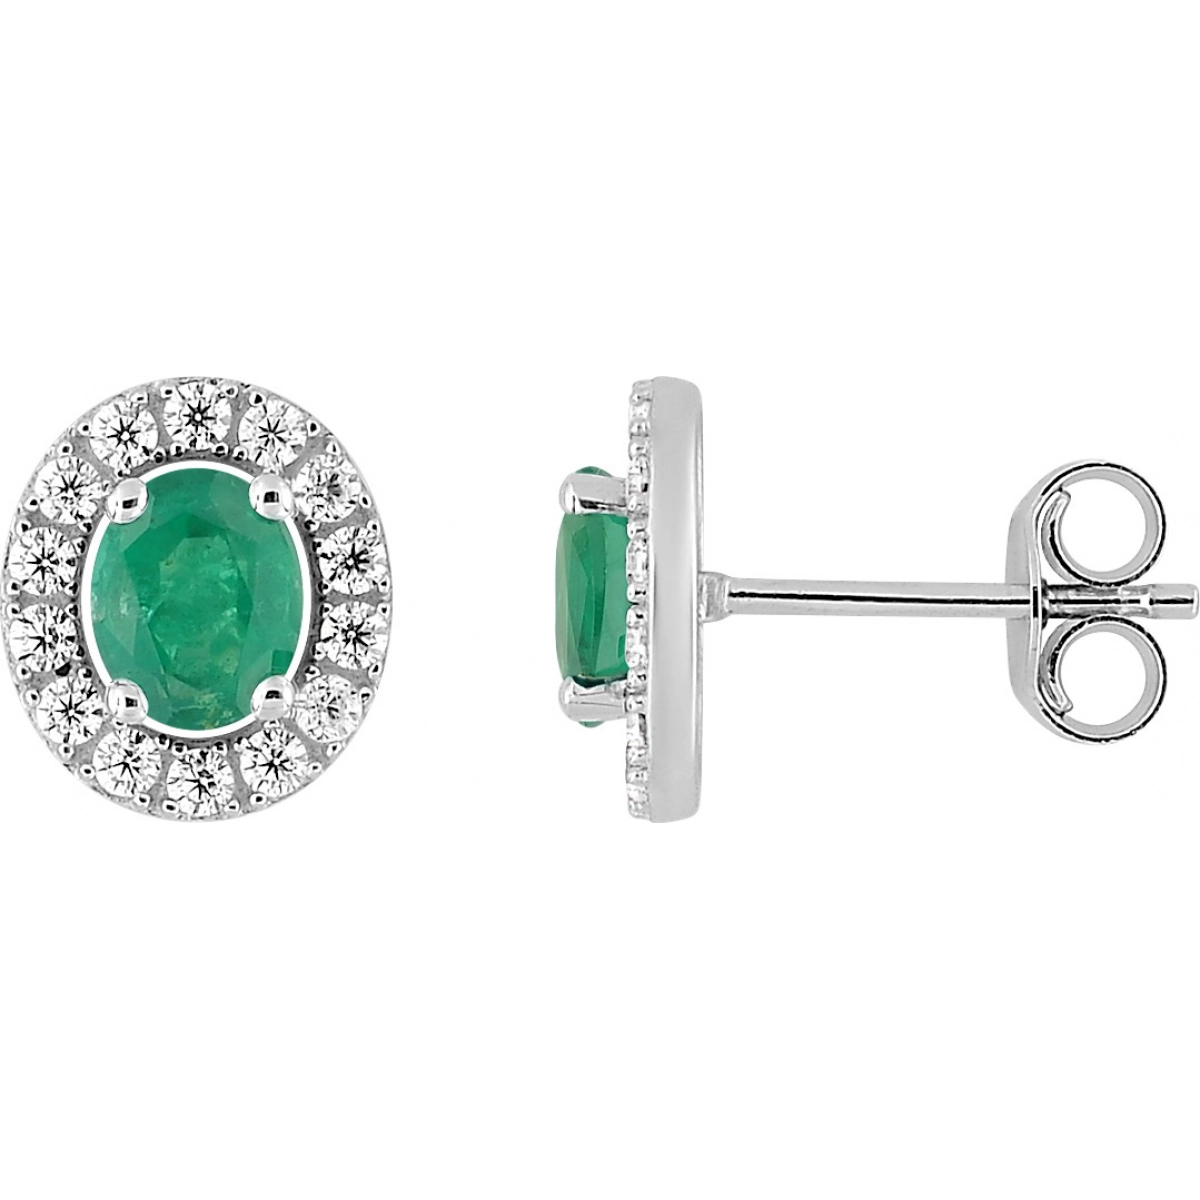 Earrings pair w. emerald an cz 9K WG  Lua Blanca  29PO51GE.0